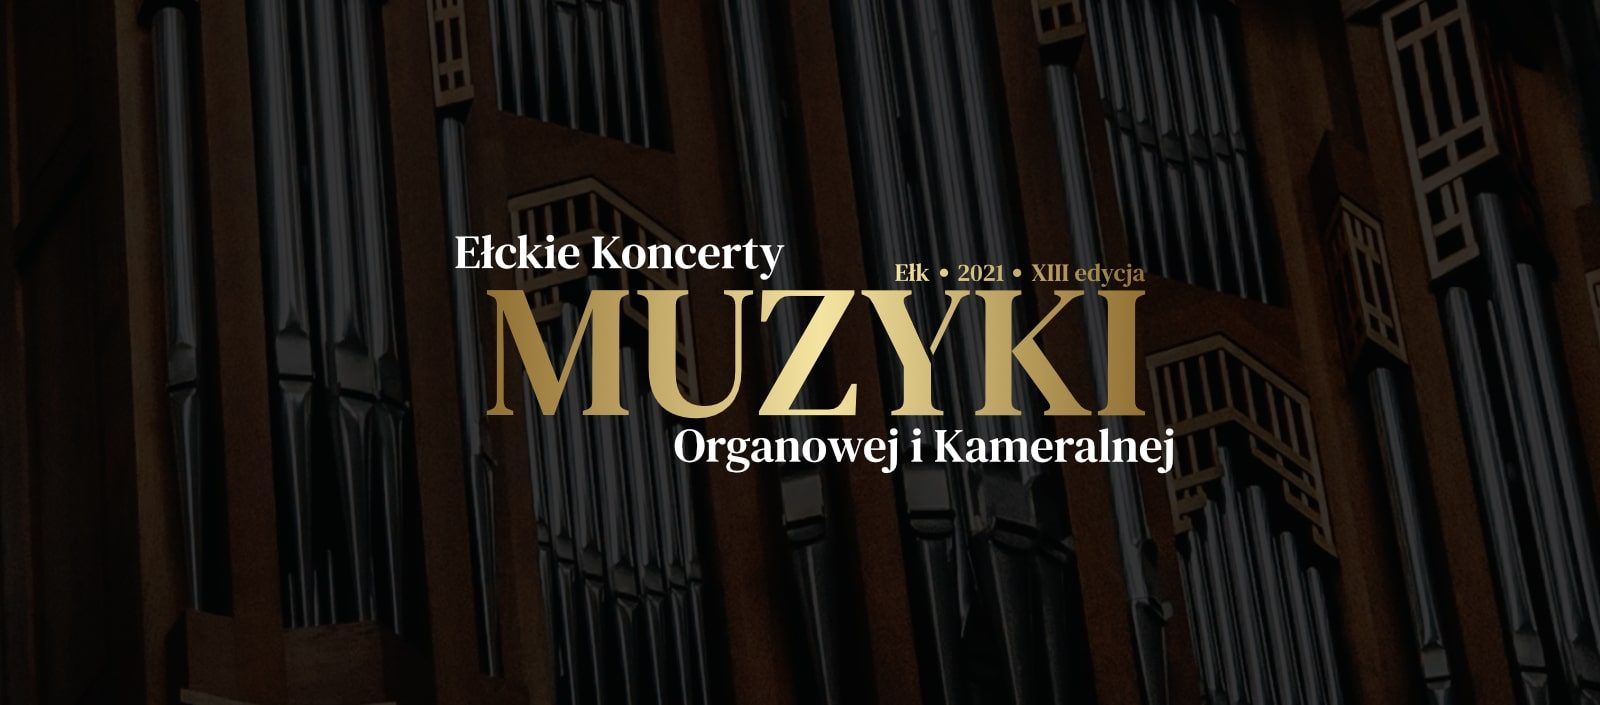 XIII edycja Ełckich Koncertów Muzyki Organowej i Kameralnej